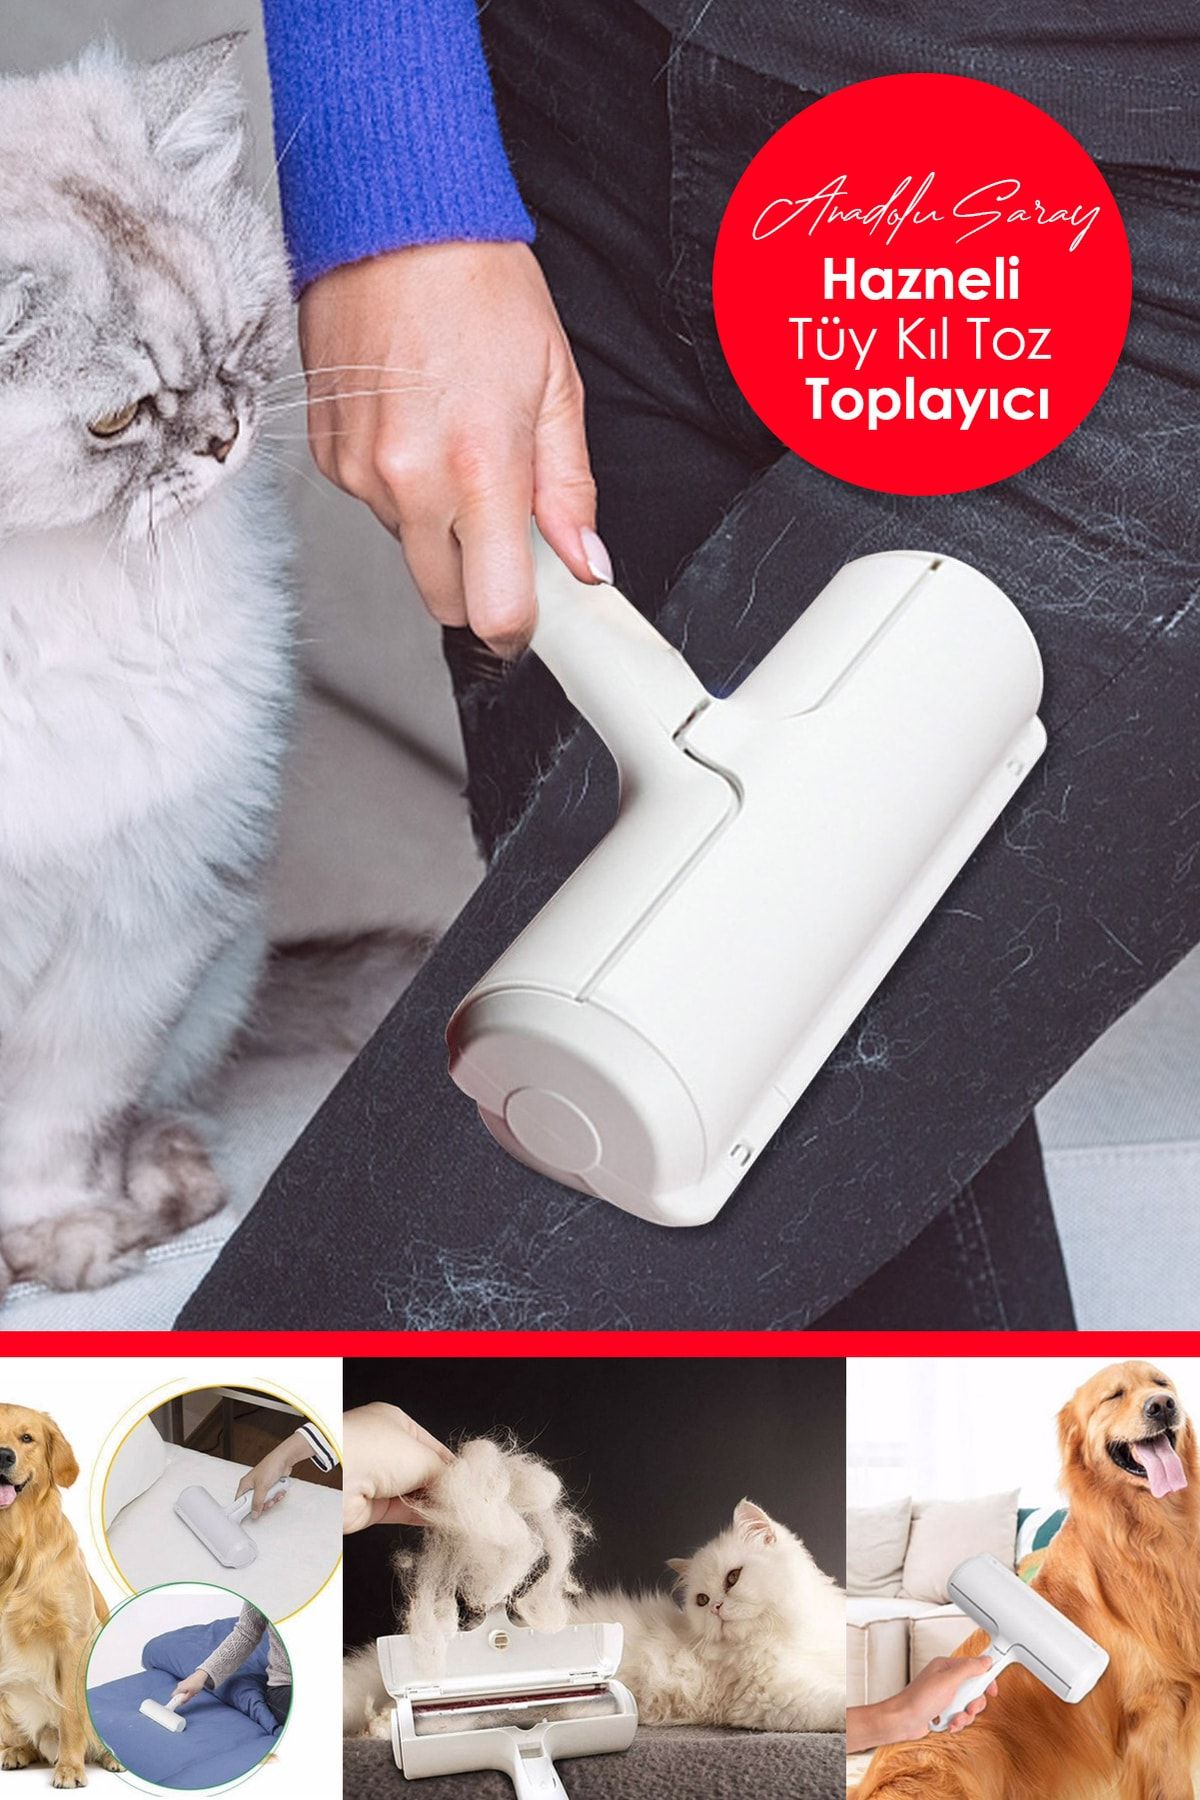 Anadolu Saray Çarşısı Baysa Hazneli Kedi Köpek Evcil Hayvan Kıyafet Elbise Halı Yatak Tüy Temizleyici Kıl Toz Toplayıcı